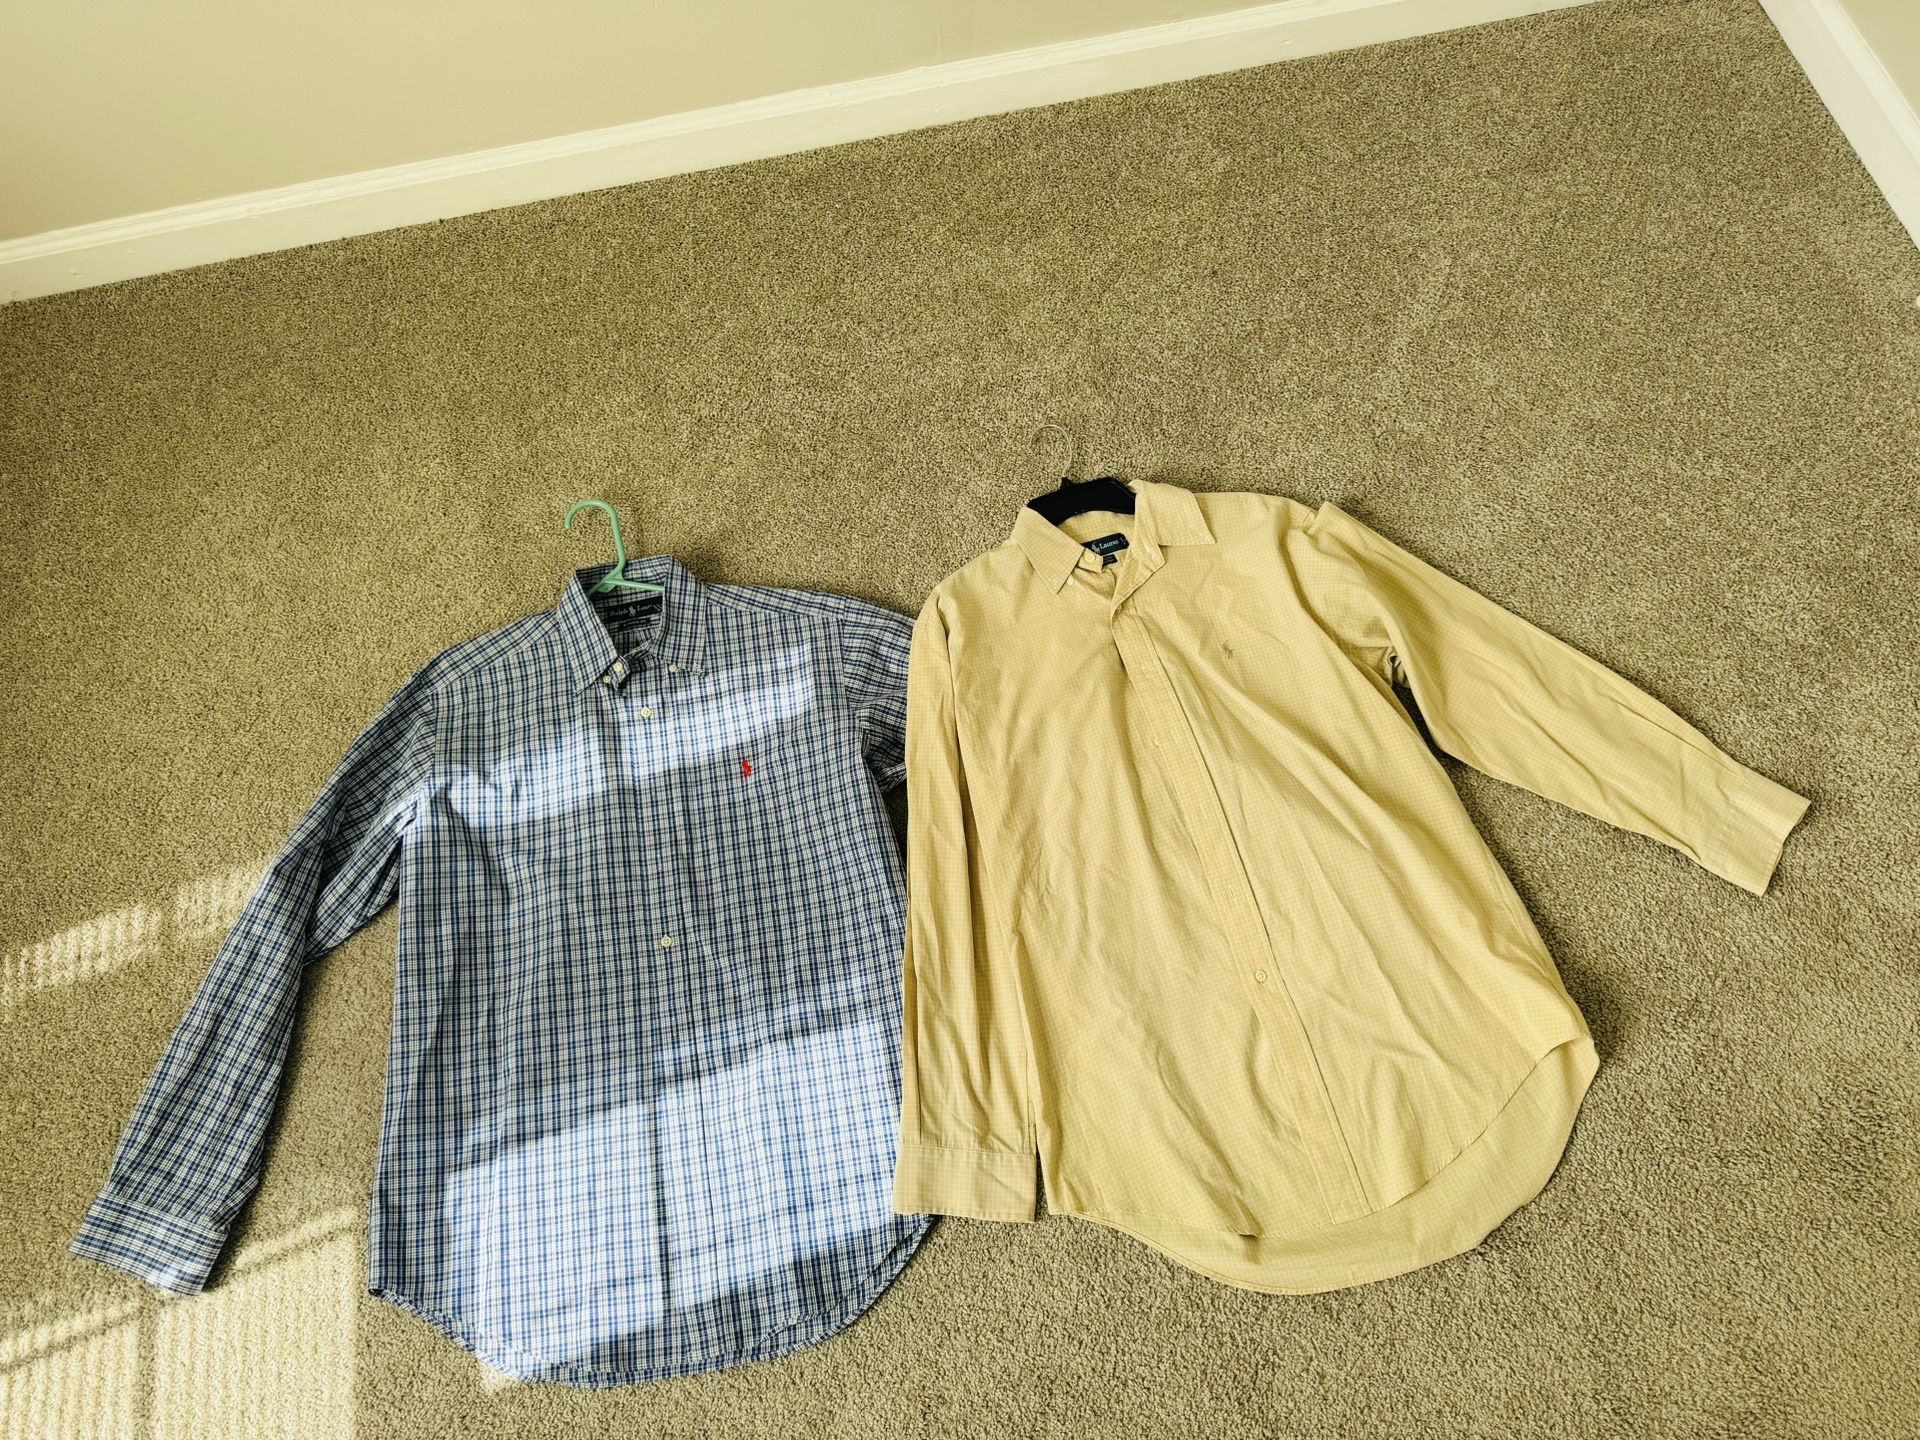 Men Classic Fit Oxford Button Shirts Bundle Size 15